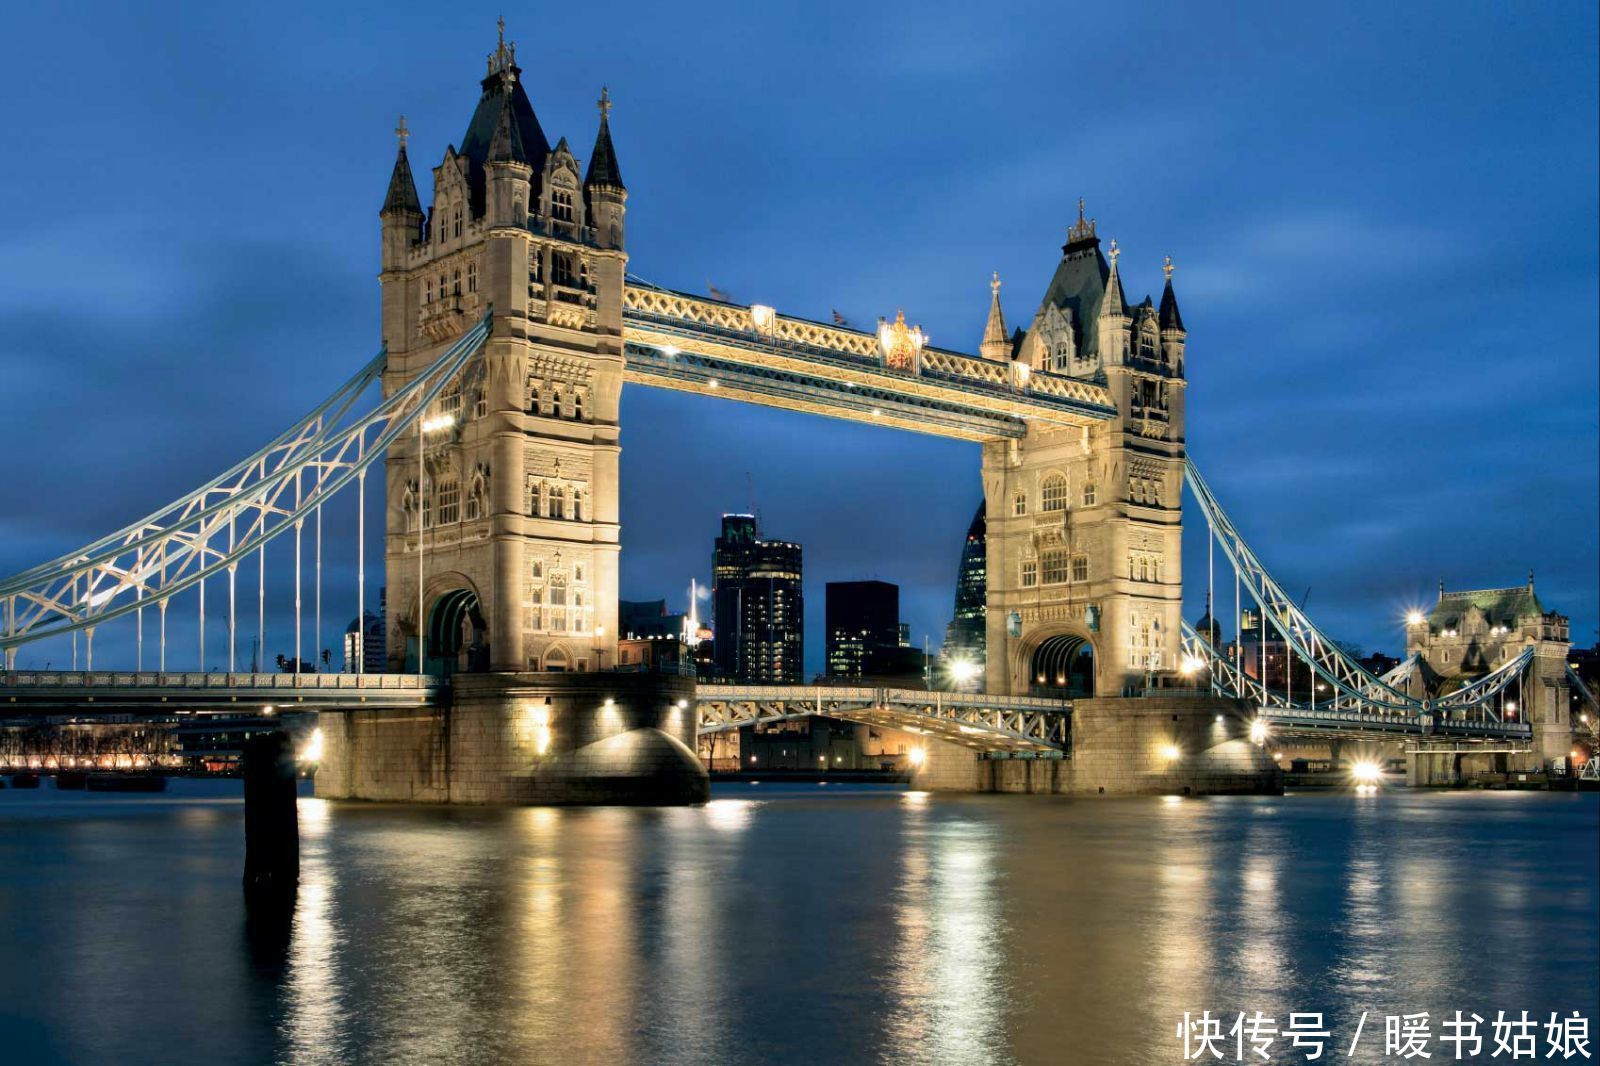 文章列表 文章详情  金门大桥(美)是世界著名大桥之一,被誉为近代桥梁